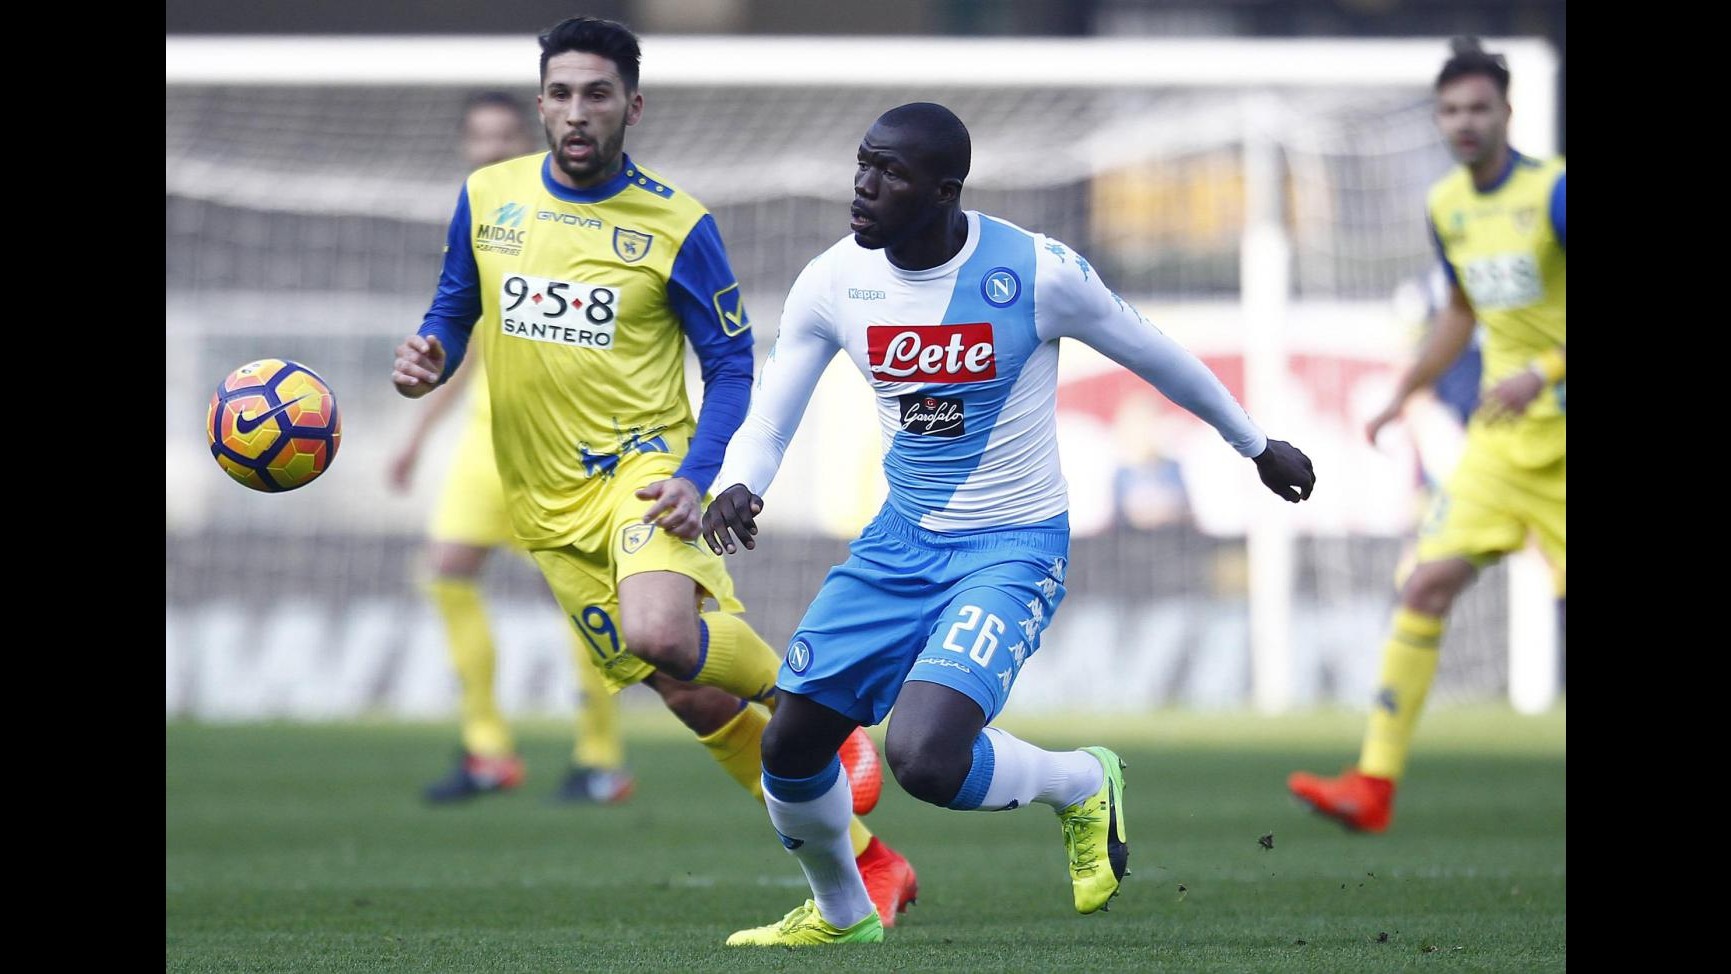 FOTO Serie A, Napoli stende Chievo 3-1 in trasferta